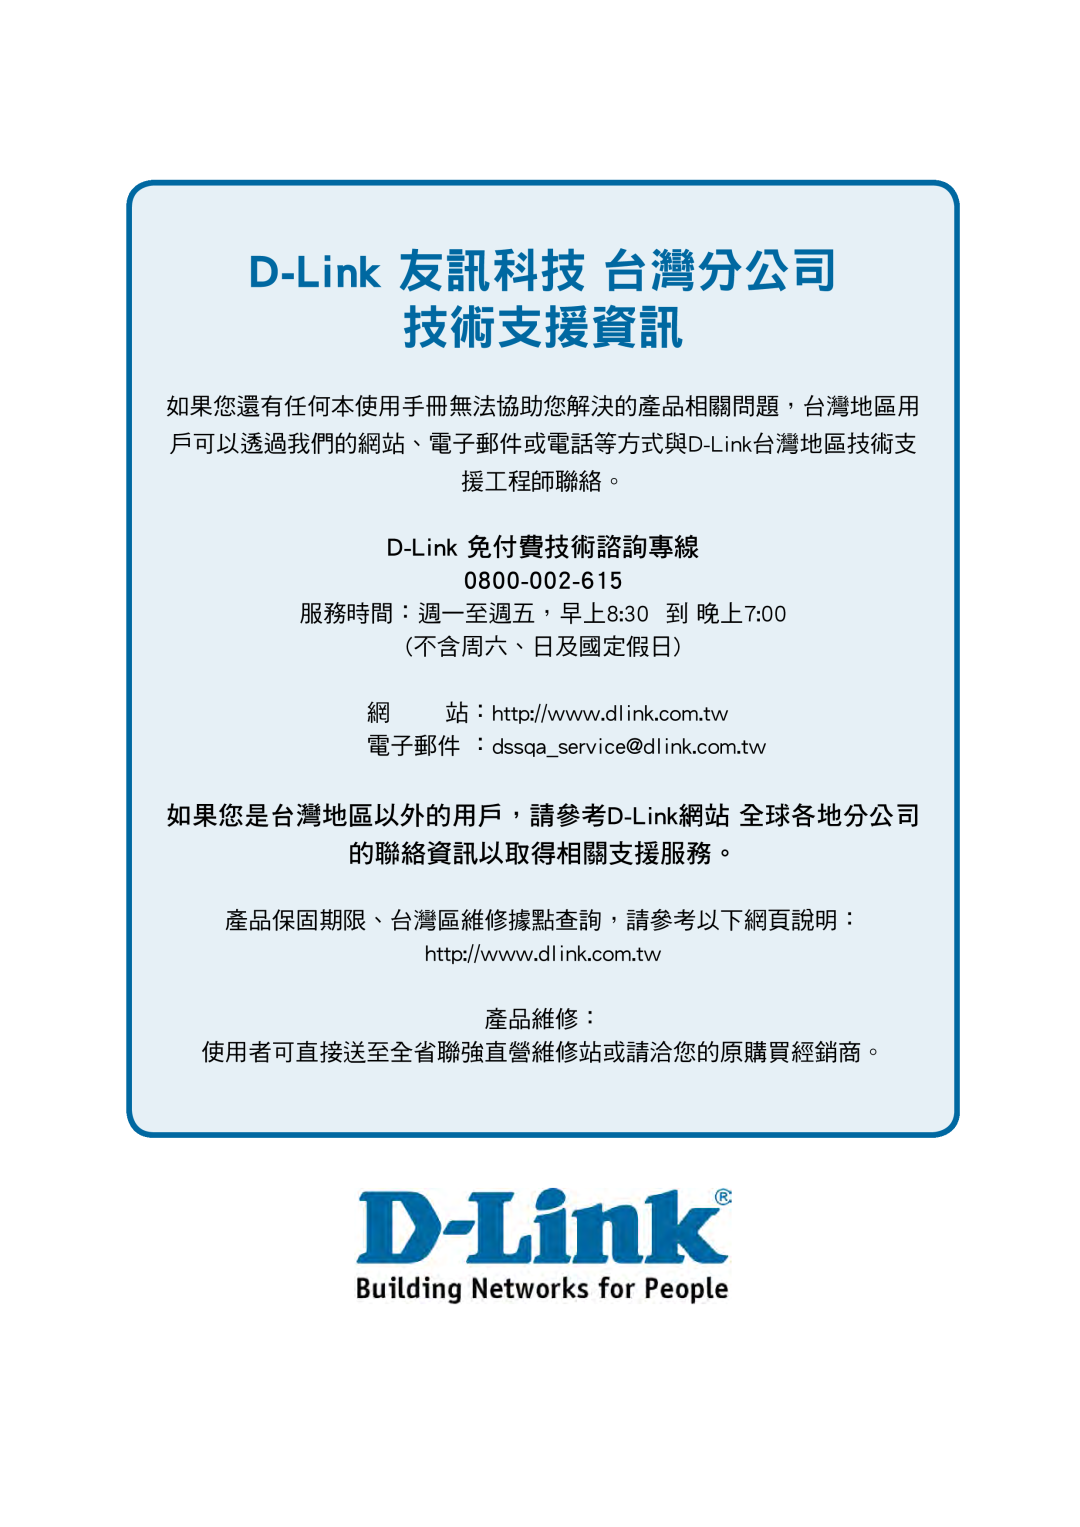 D-Link DES-1228P user manual D-Link 友訊科技 台灣分公司 技術支援資訊, D-Link 免付費技術諮詢專線, 0800-002-615, 服務時間：週一至週五，早上830 到 晚上700 不含周六、日及國定假日 